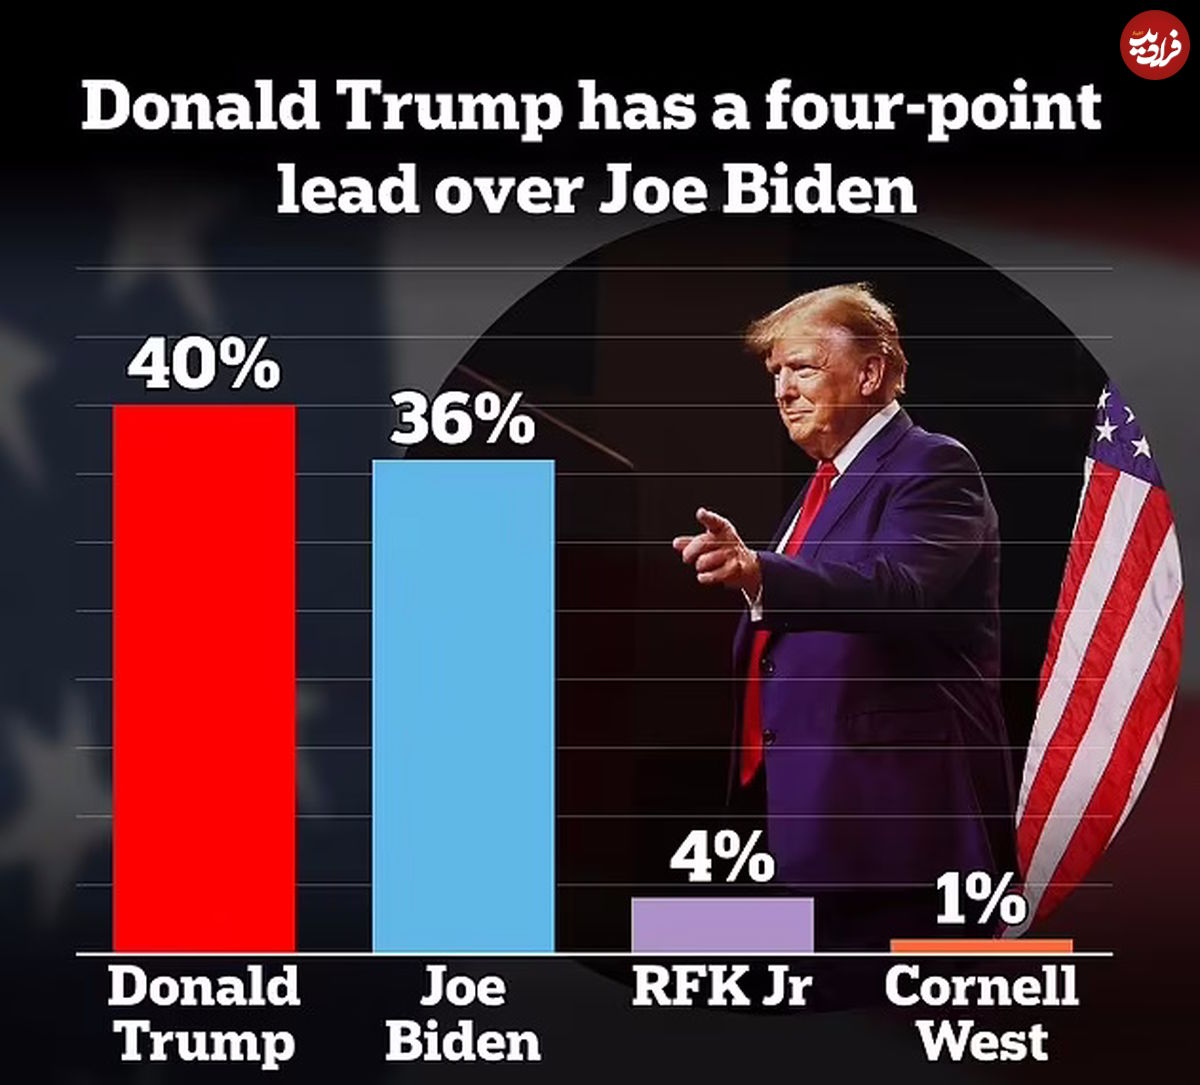 چارت هایی که محبوبیت دونالد ترامپ و جو بایدن را در میان رأی دهندگان نشان می دهند